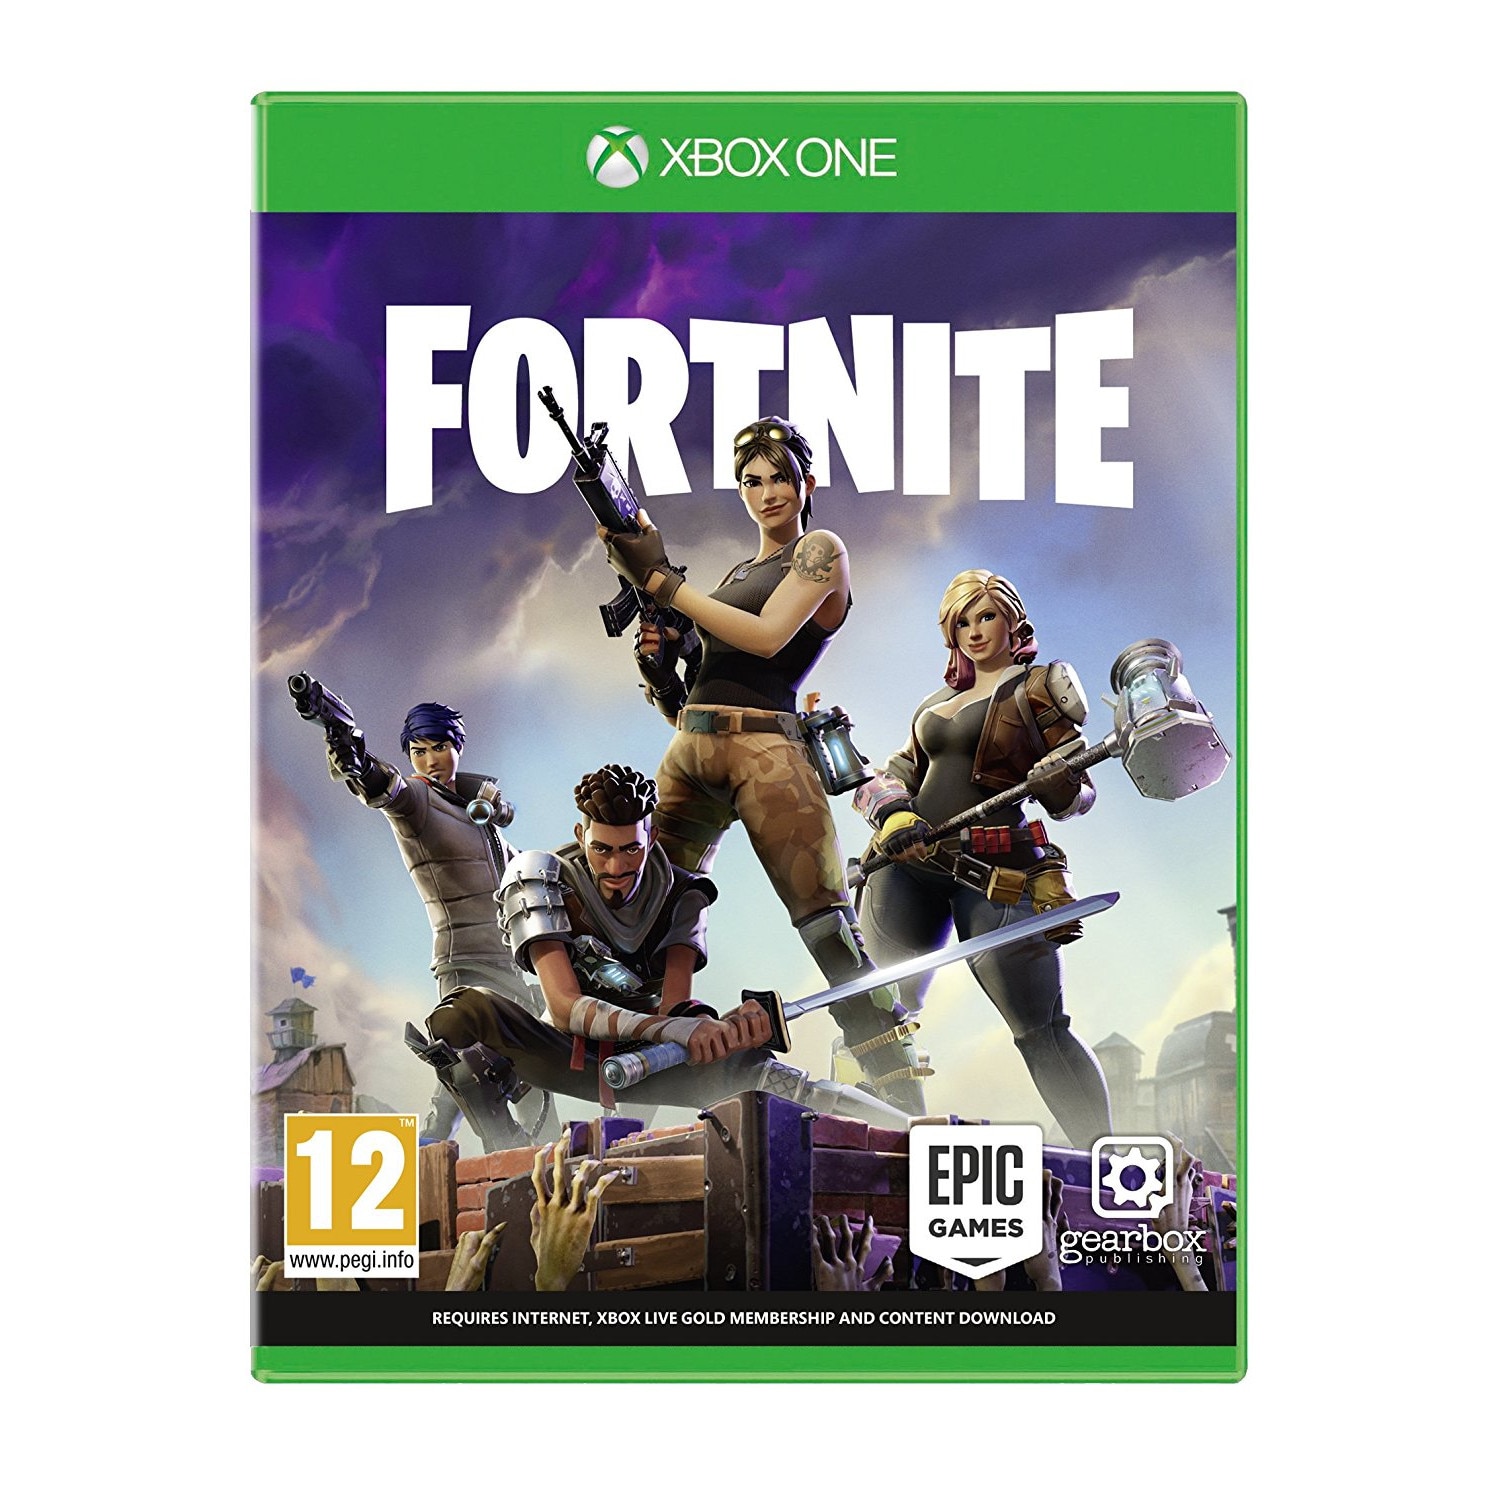 Epic games ps4. Диск Fortnite на ps4. Диск ФОРТНАЙТ на Xbox 360. ФОРТНАЙТ диск на ПС 2. Fortnite Battle Royale игры для PLAYSTATION 4.